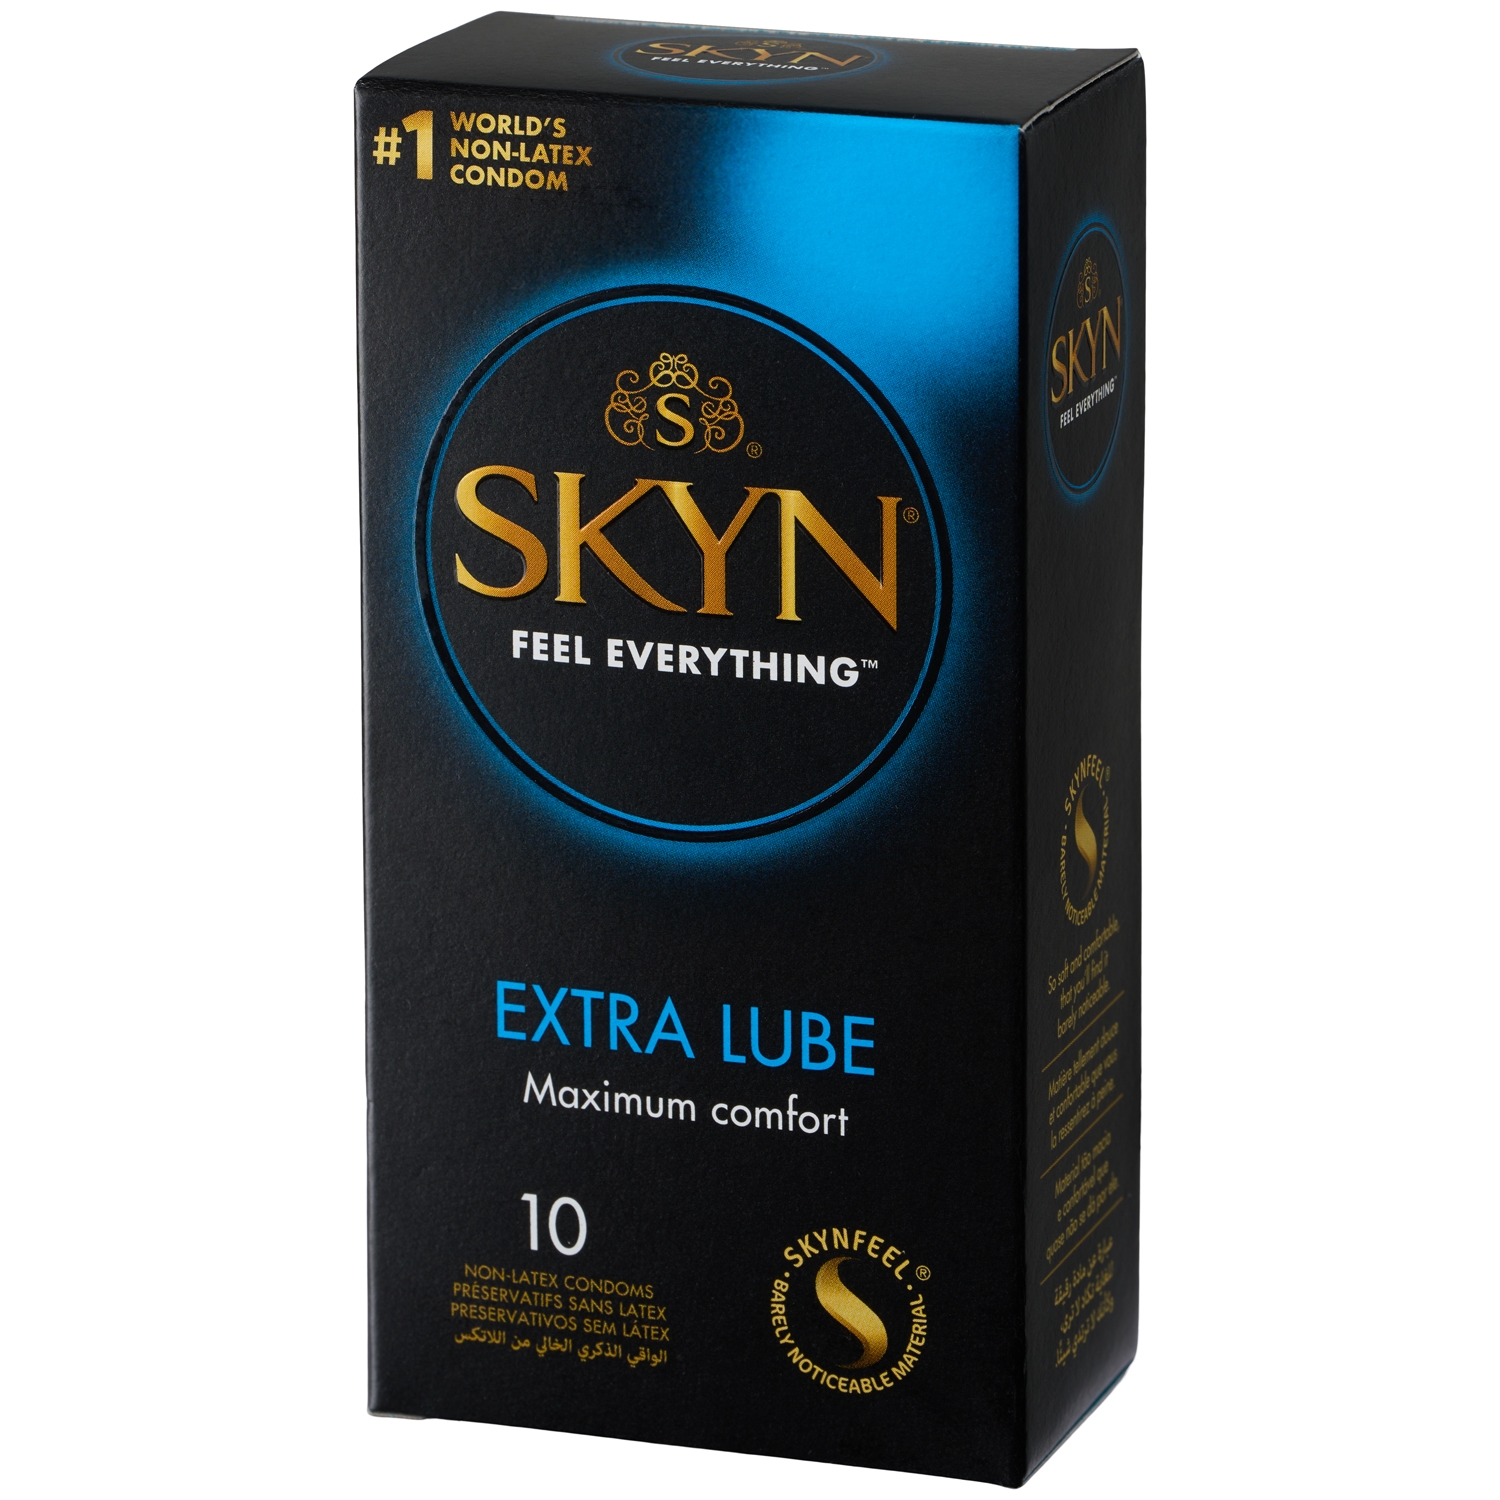 Skyn Extra Lube Latexfri Kondomer 10 stk - Clear